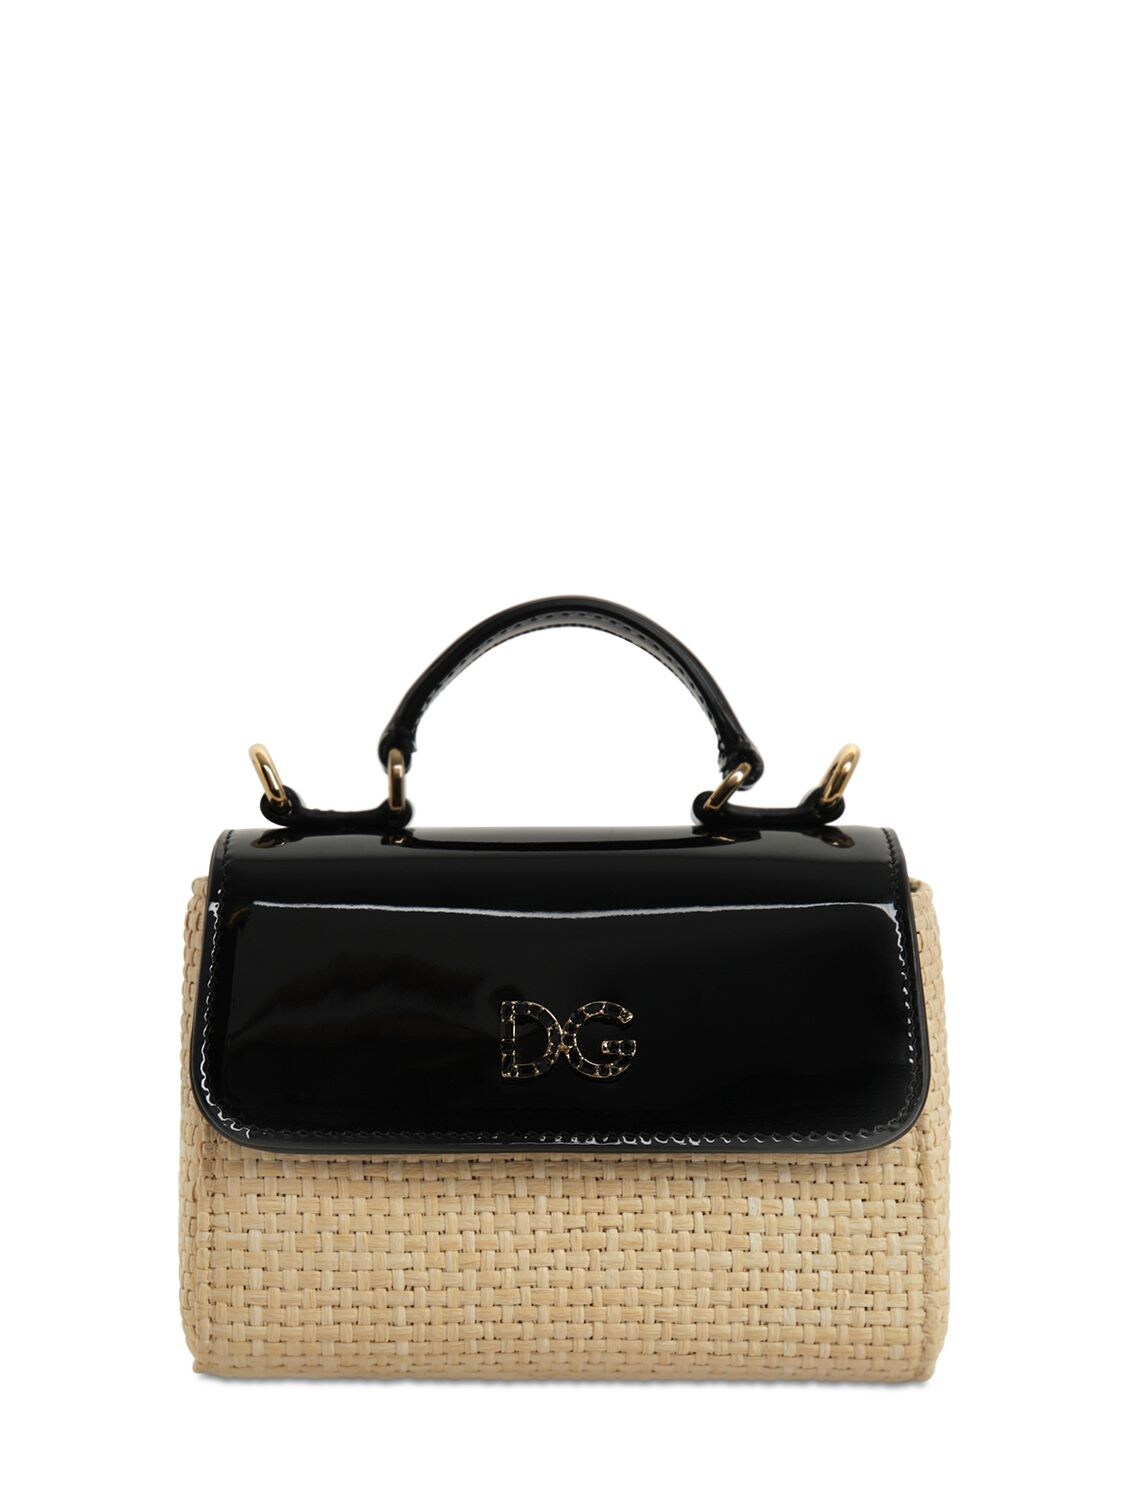 Dolce & Gabbana Kids' Leather & Raffia Shoulder Bag In Multicolor